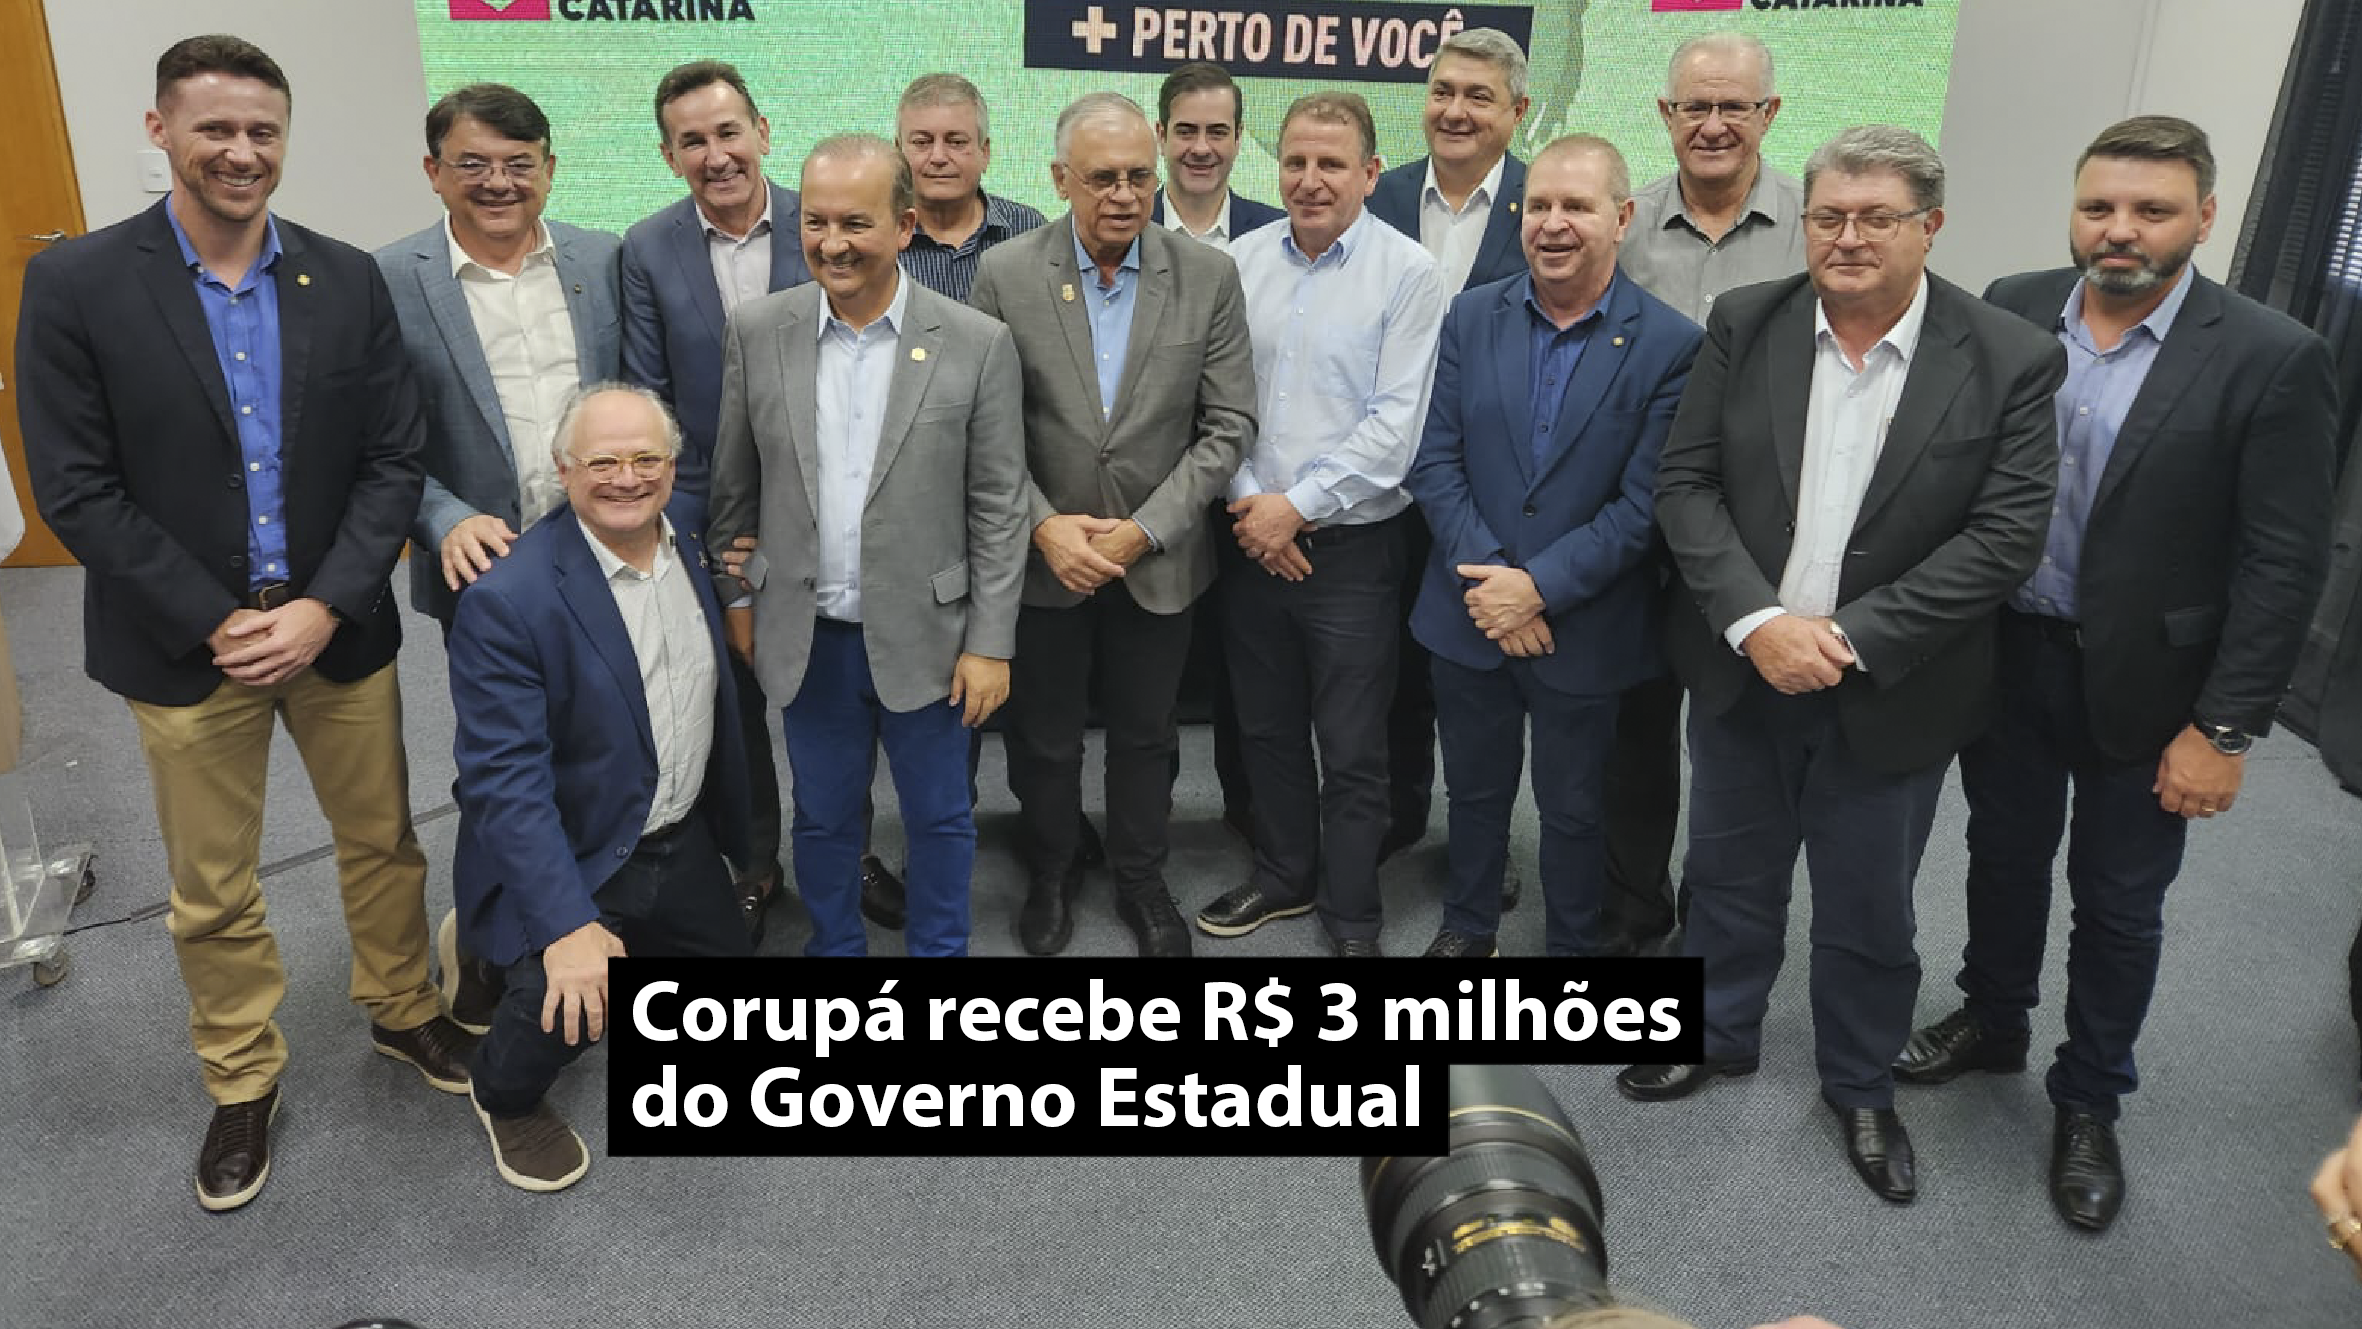 Corupá recebe R$ 3 milhões do Governo Estadual